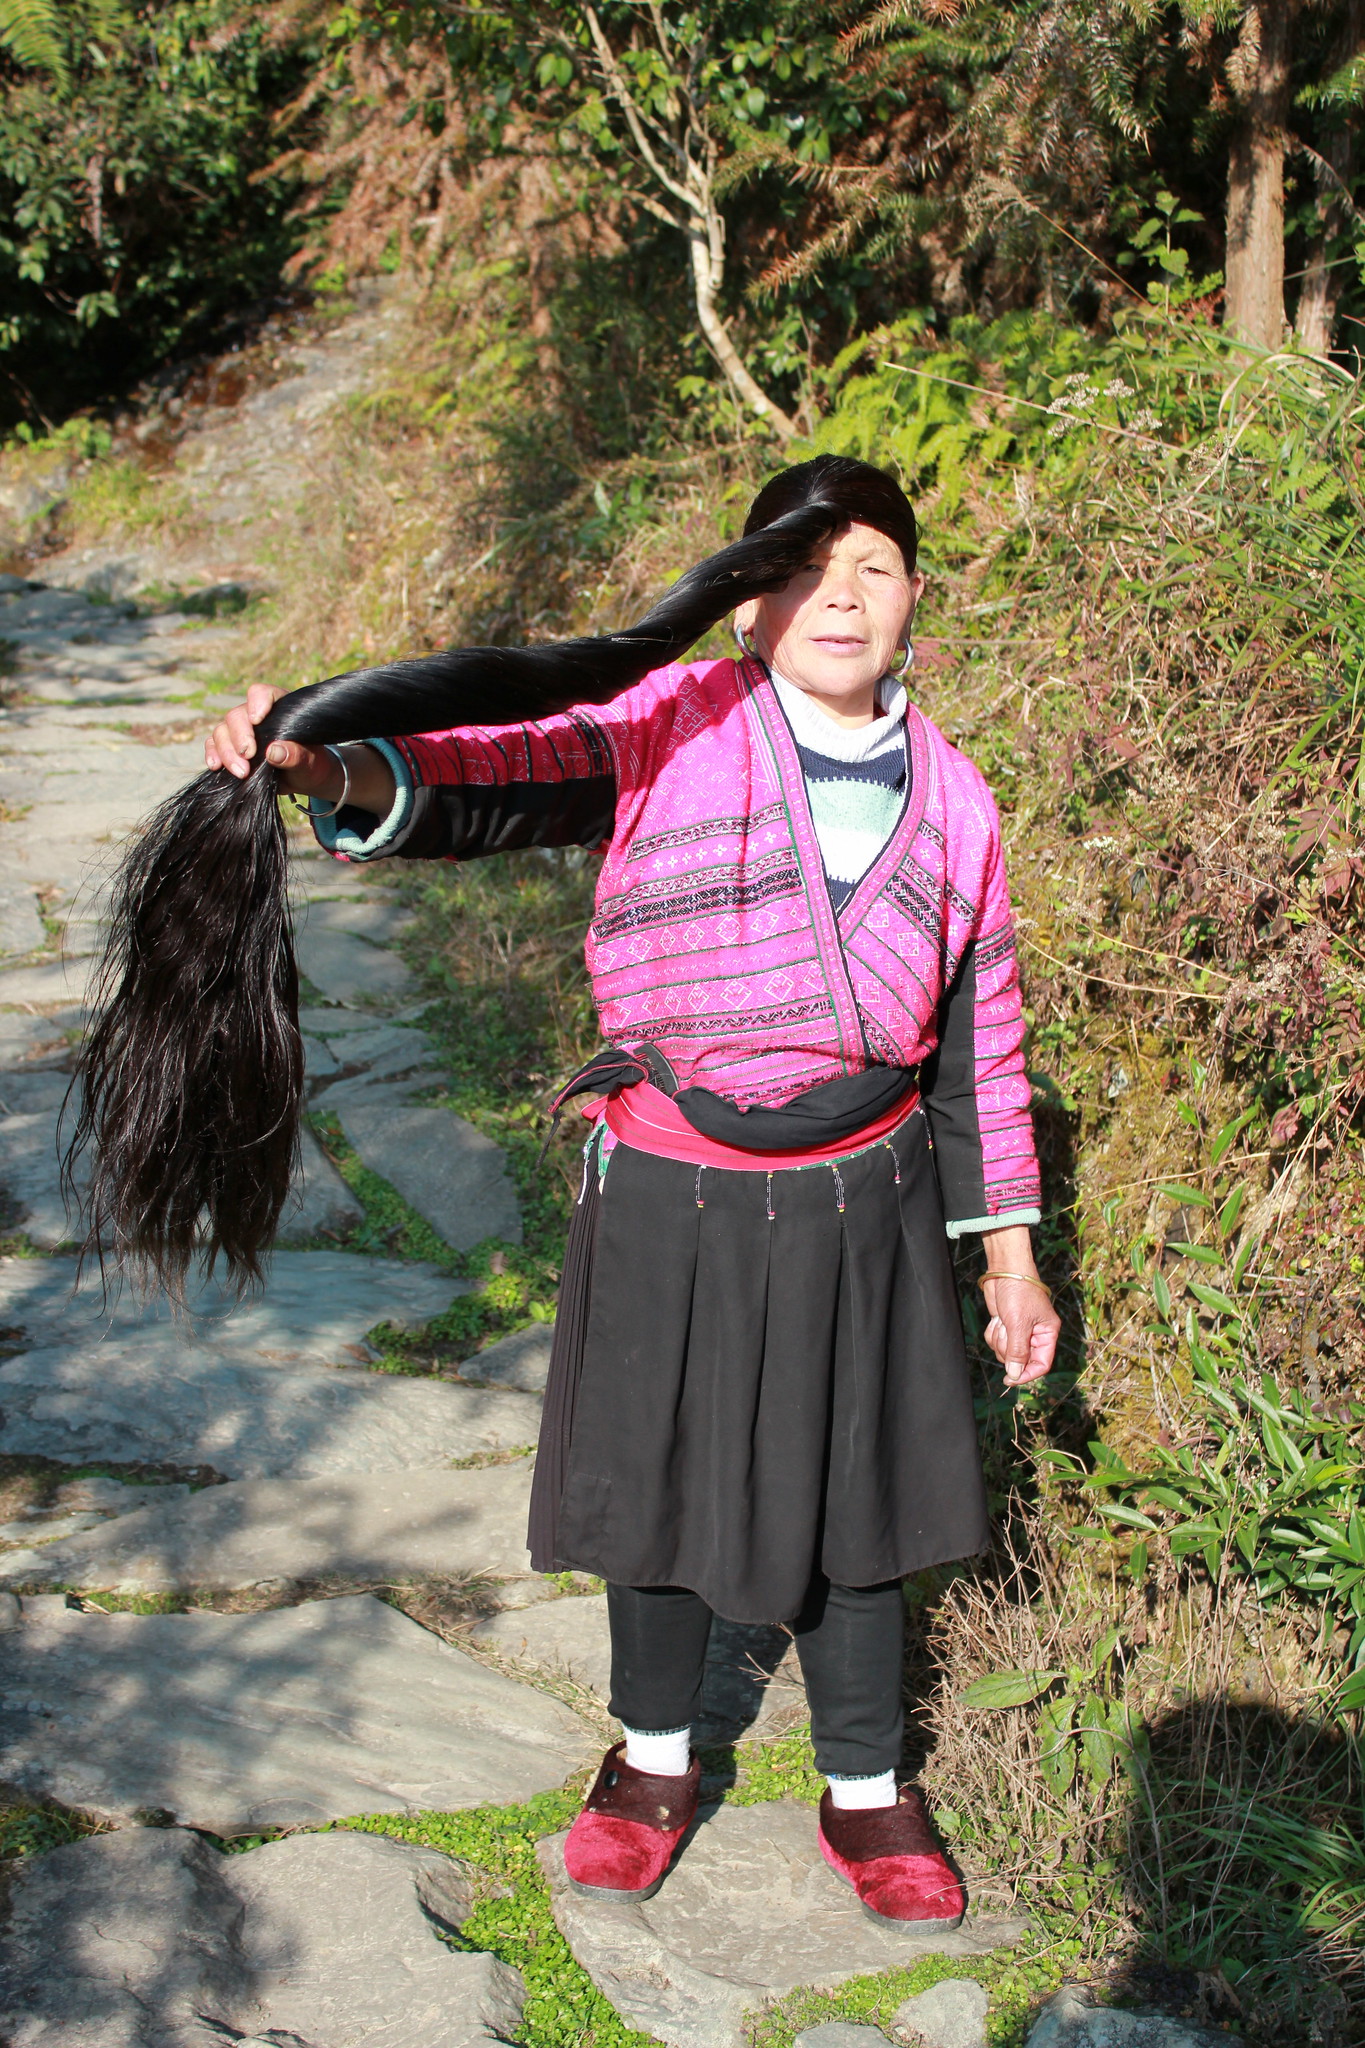 capelli delle donne della tribù cinese Red Yao